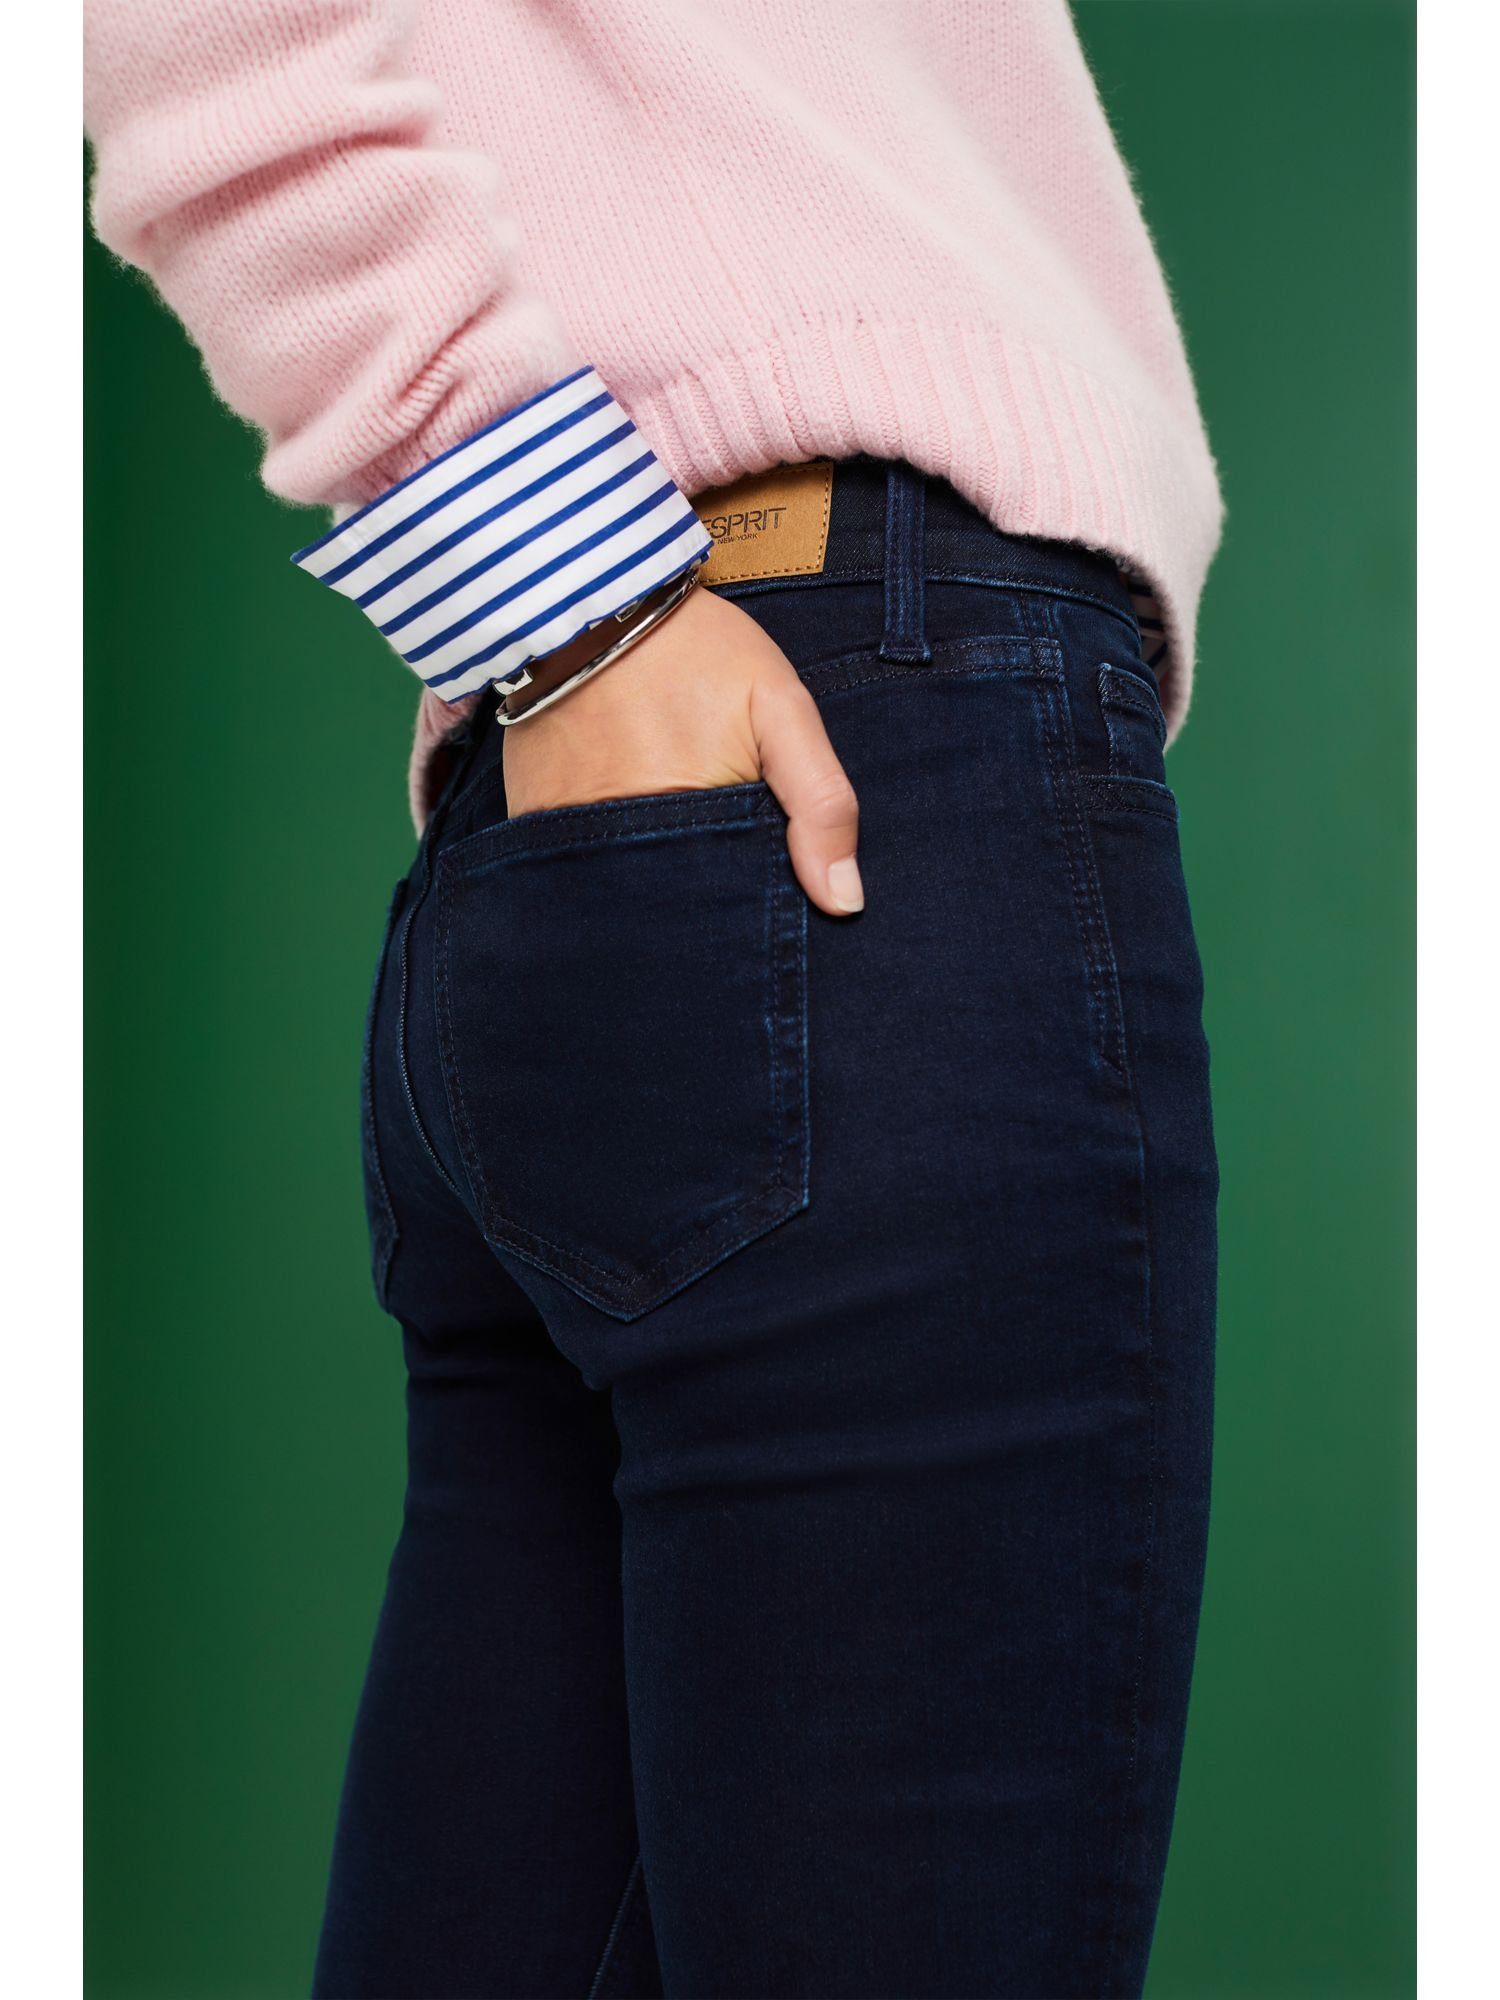 mittlerer Slim-fit-Jeans Bundhöhe mit Esprit Jeans Schmale